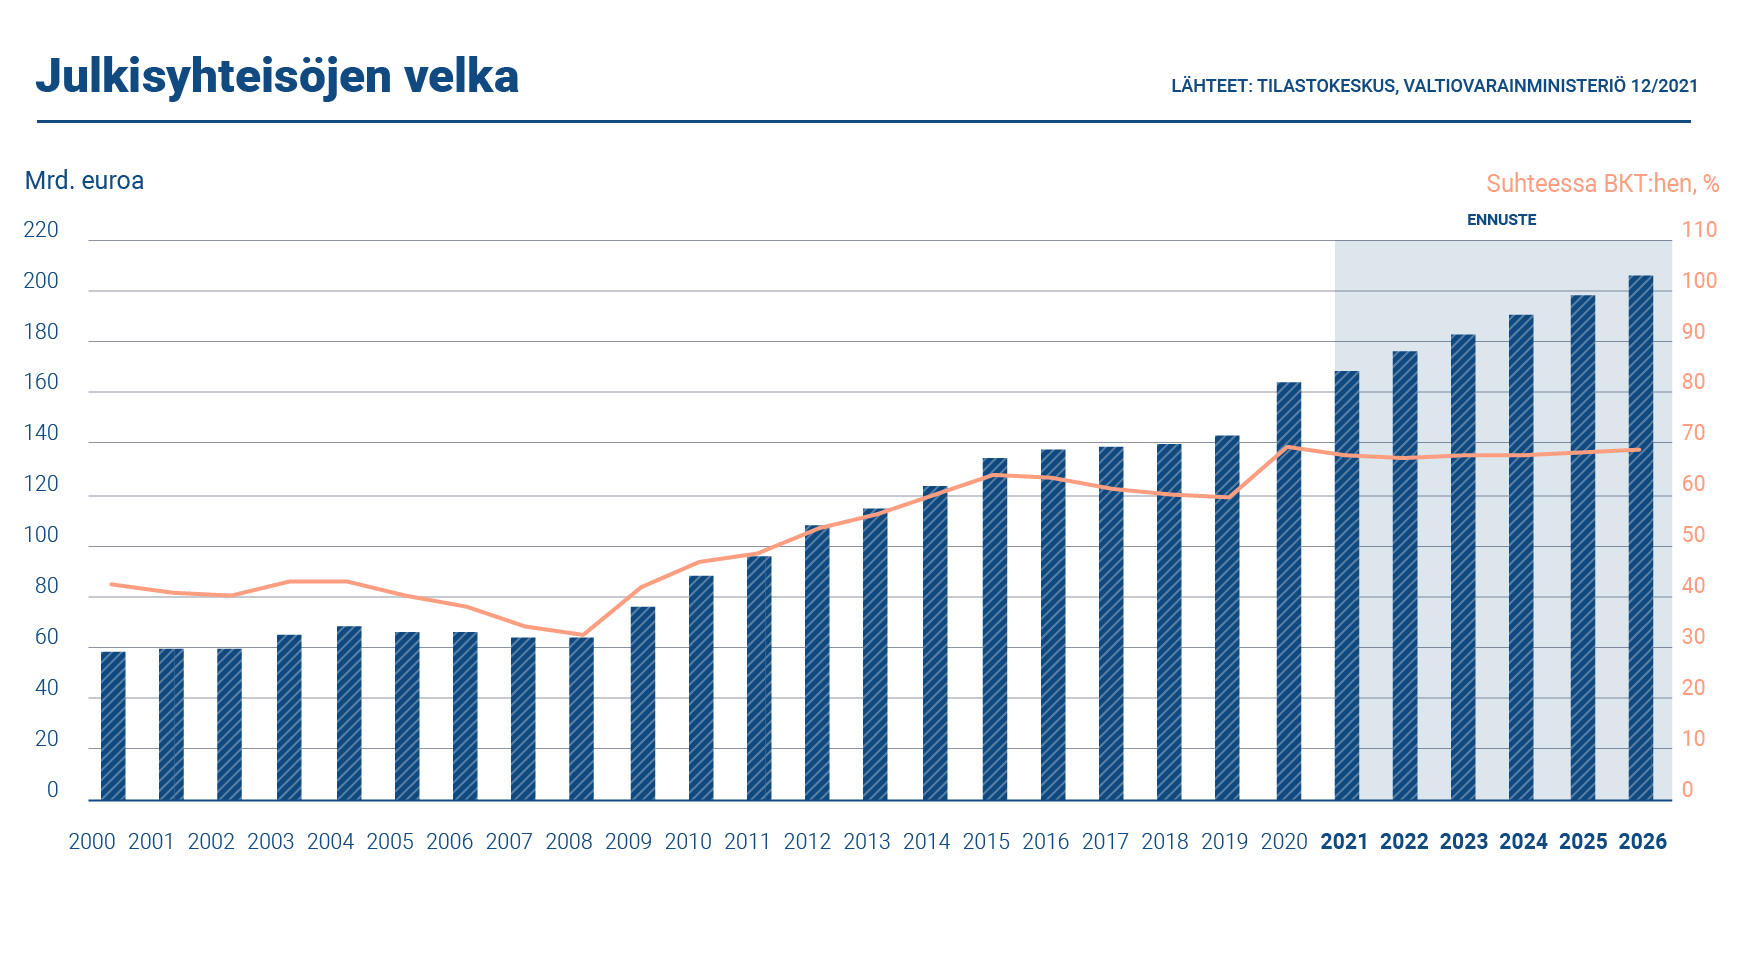 Kaaviossa esitetään Suomen julkisyhteisöjen velan määrä. Julkisyhteisöjen velka vuonna 2021 oli 168,4 miljardia euroa. Velan suhde BKT:hen oli 67,7 prosenttia.